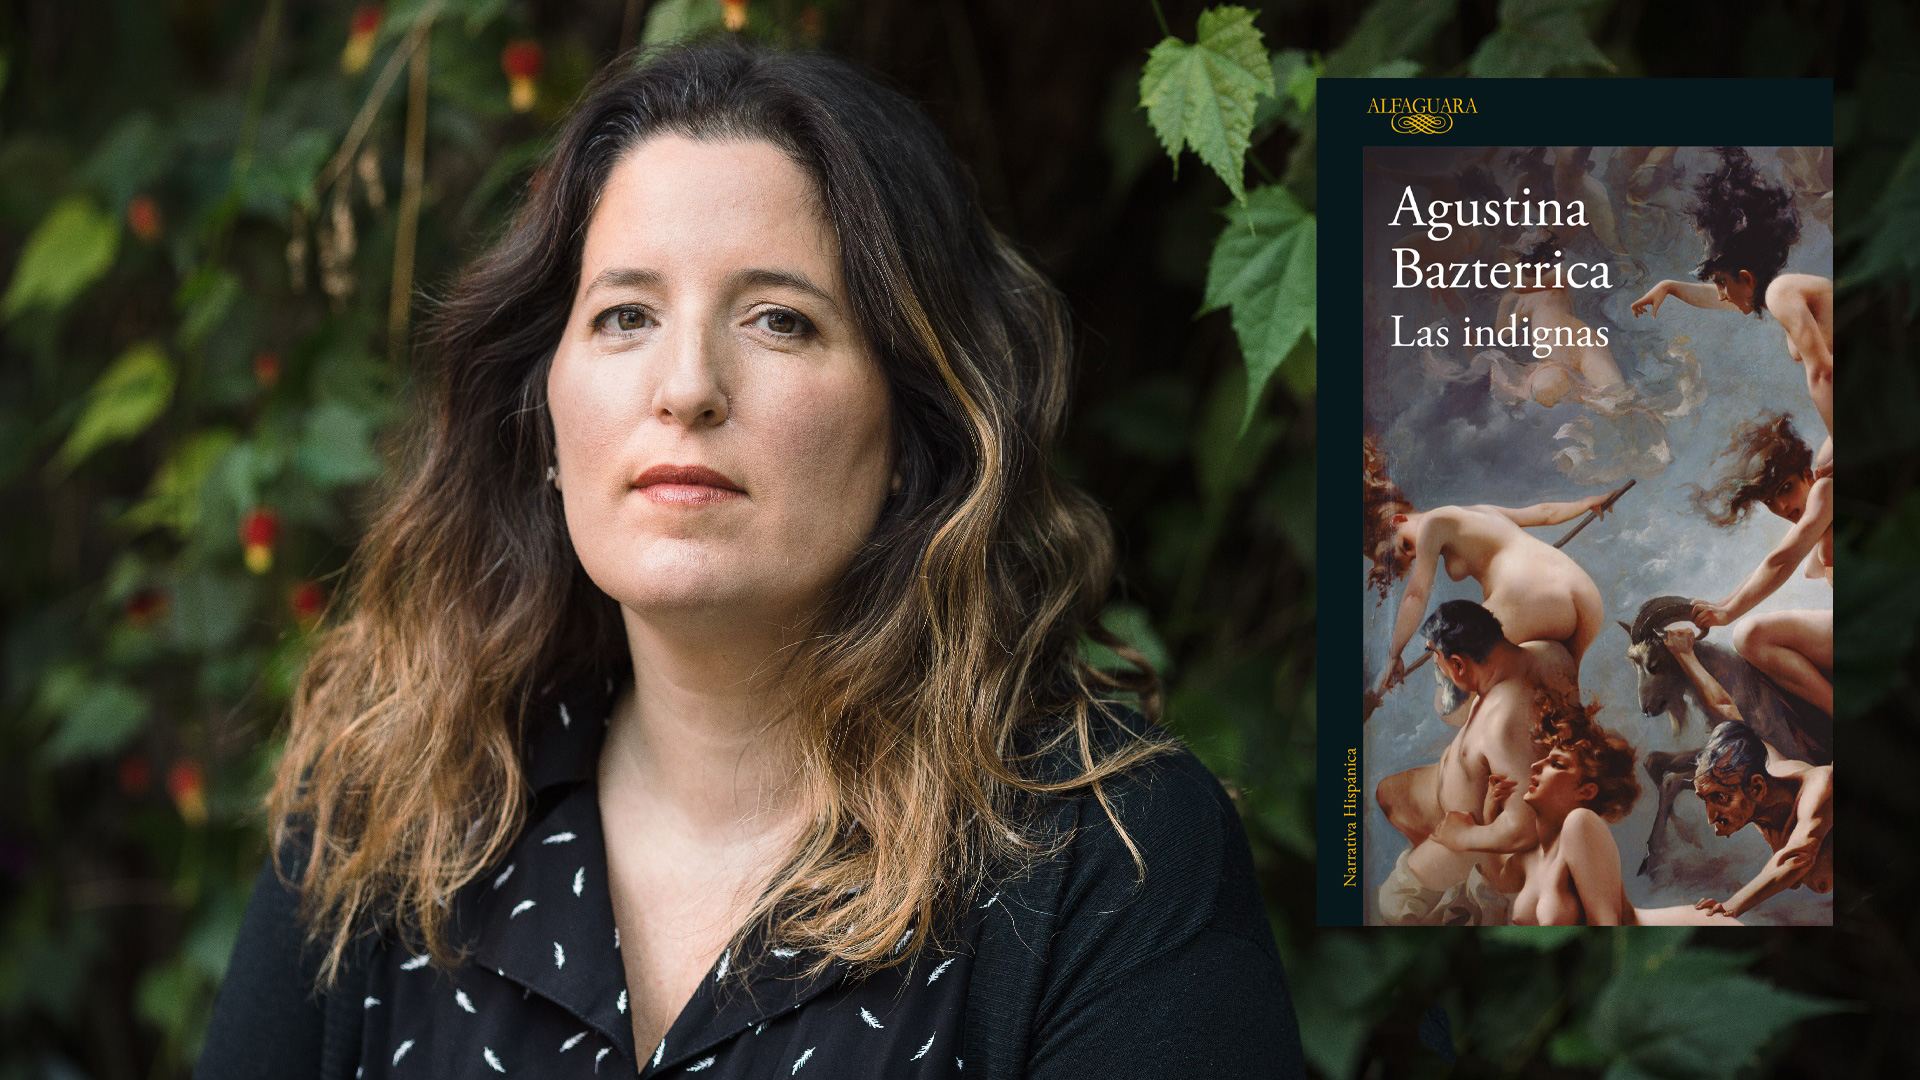 Agustina Bazterrica triunfó con un libro en el que la gente comía gente y  ahora vuelve a golpear: “Puedo hablar de cosas horrorosas pero con belleza”  - Infobae